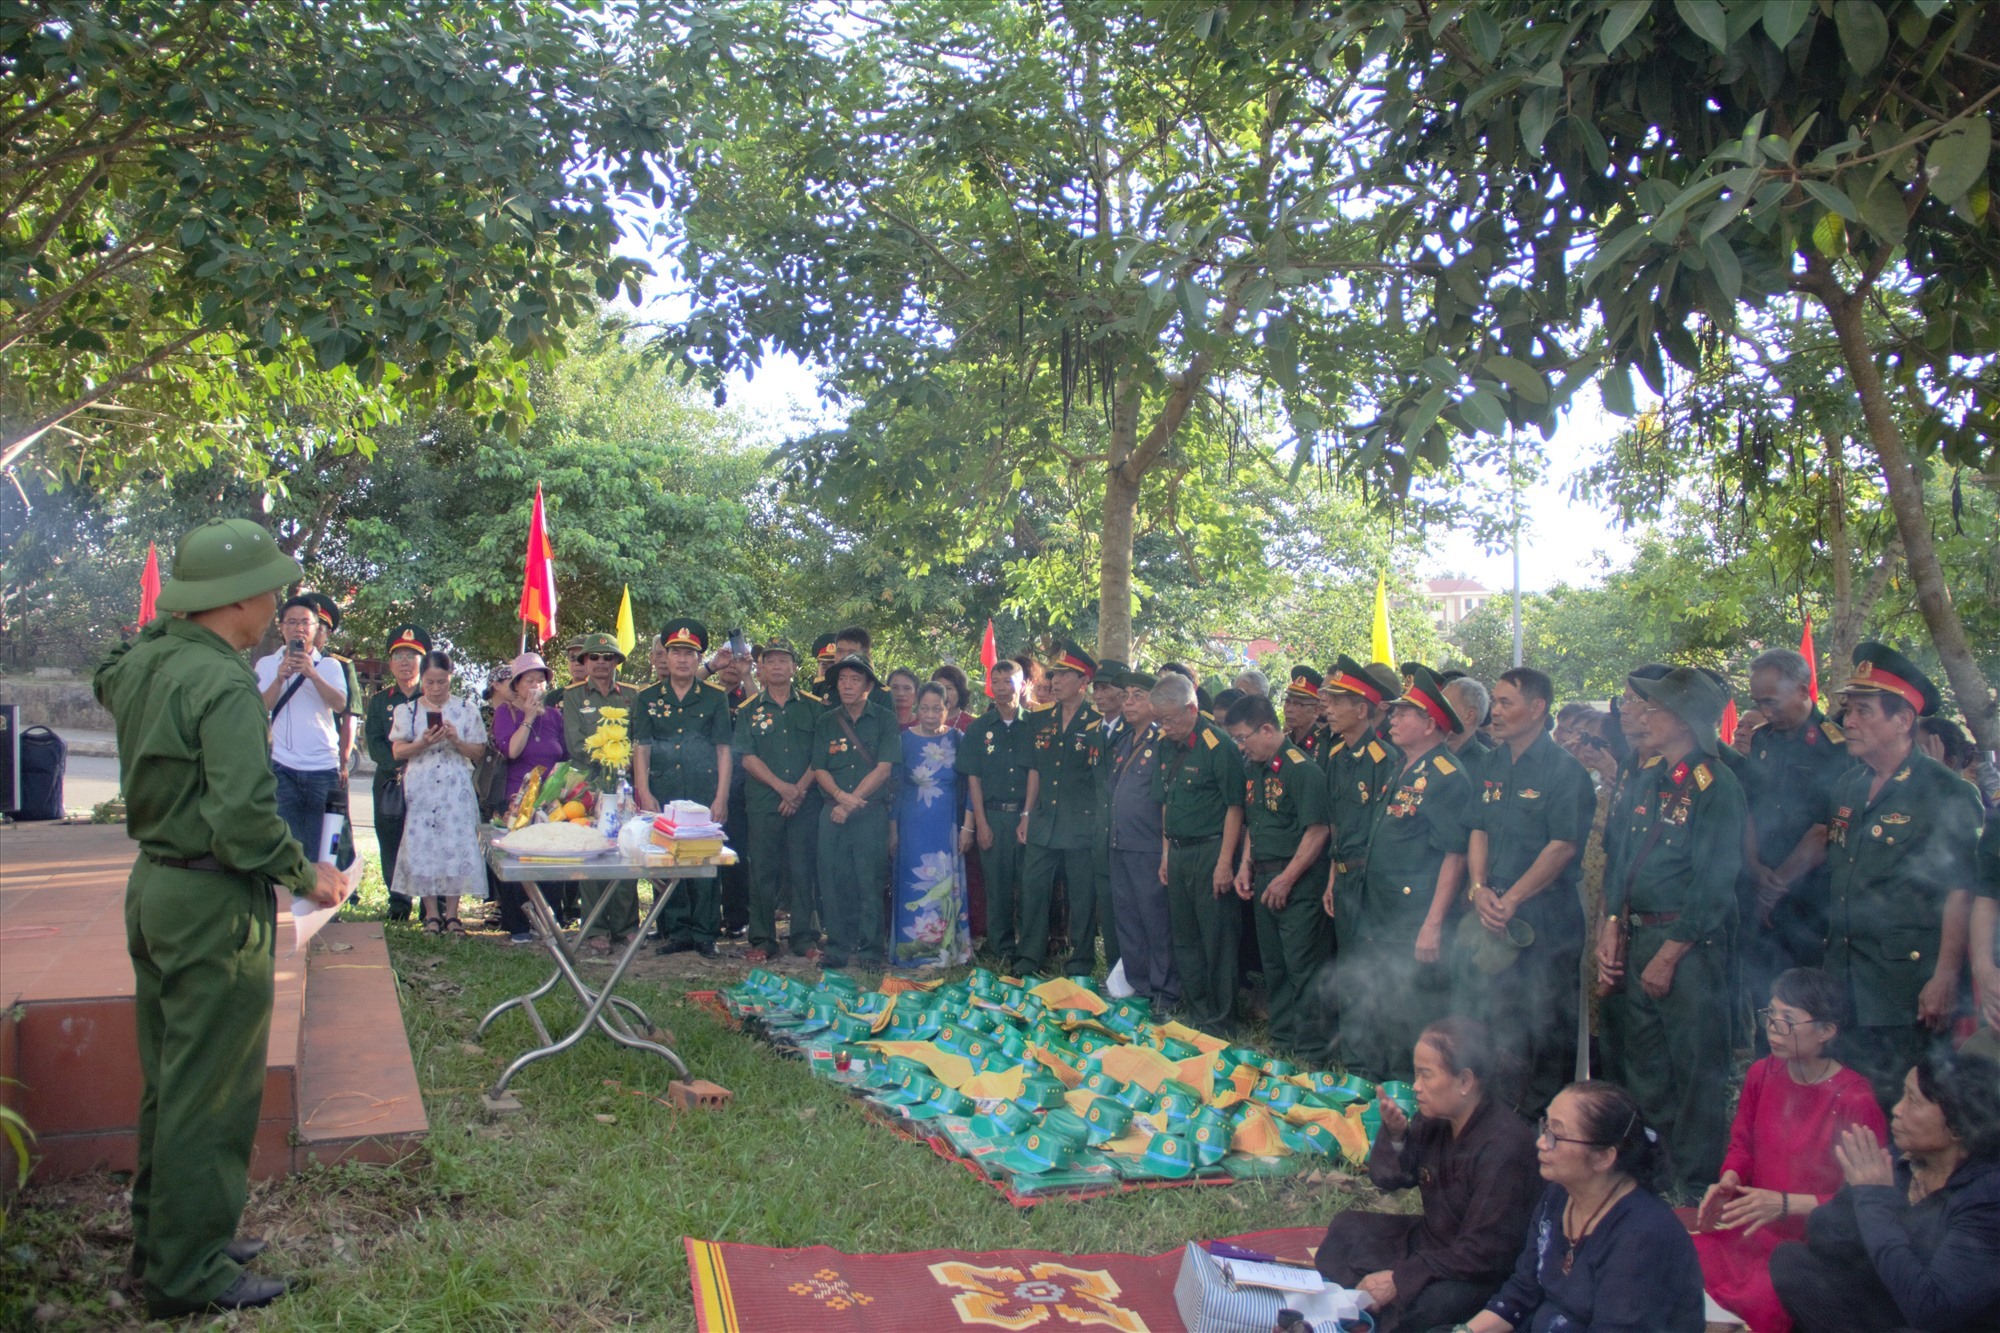 Các cựu chiến binh thuộc Trung đoàn 241 thắp hương, viếng các đồng đội hy sinh, an nghỉ ở Khe Sanh trong chiến dịch Đường 9 - Khe Sanh